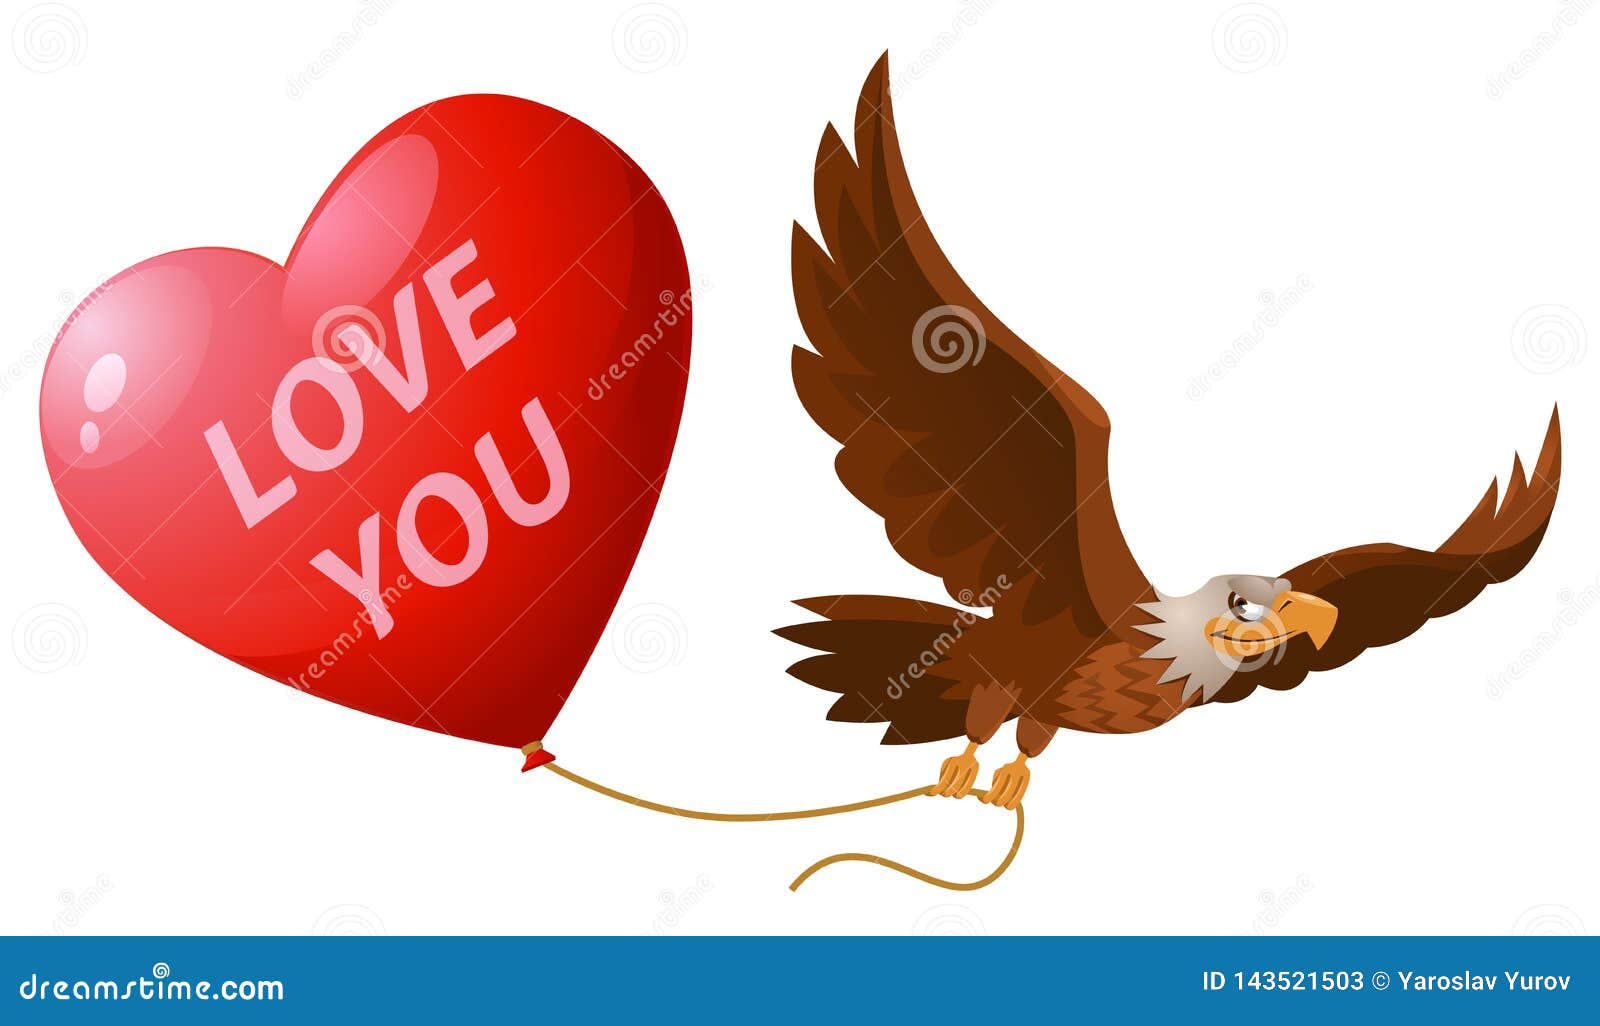 Любовь игл. Изображение три орла держат шар. Орел показывает сердечко cartoon.